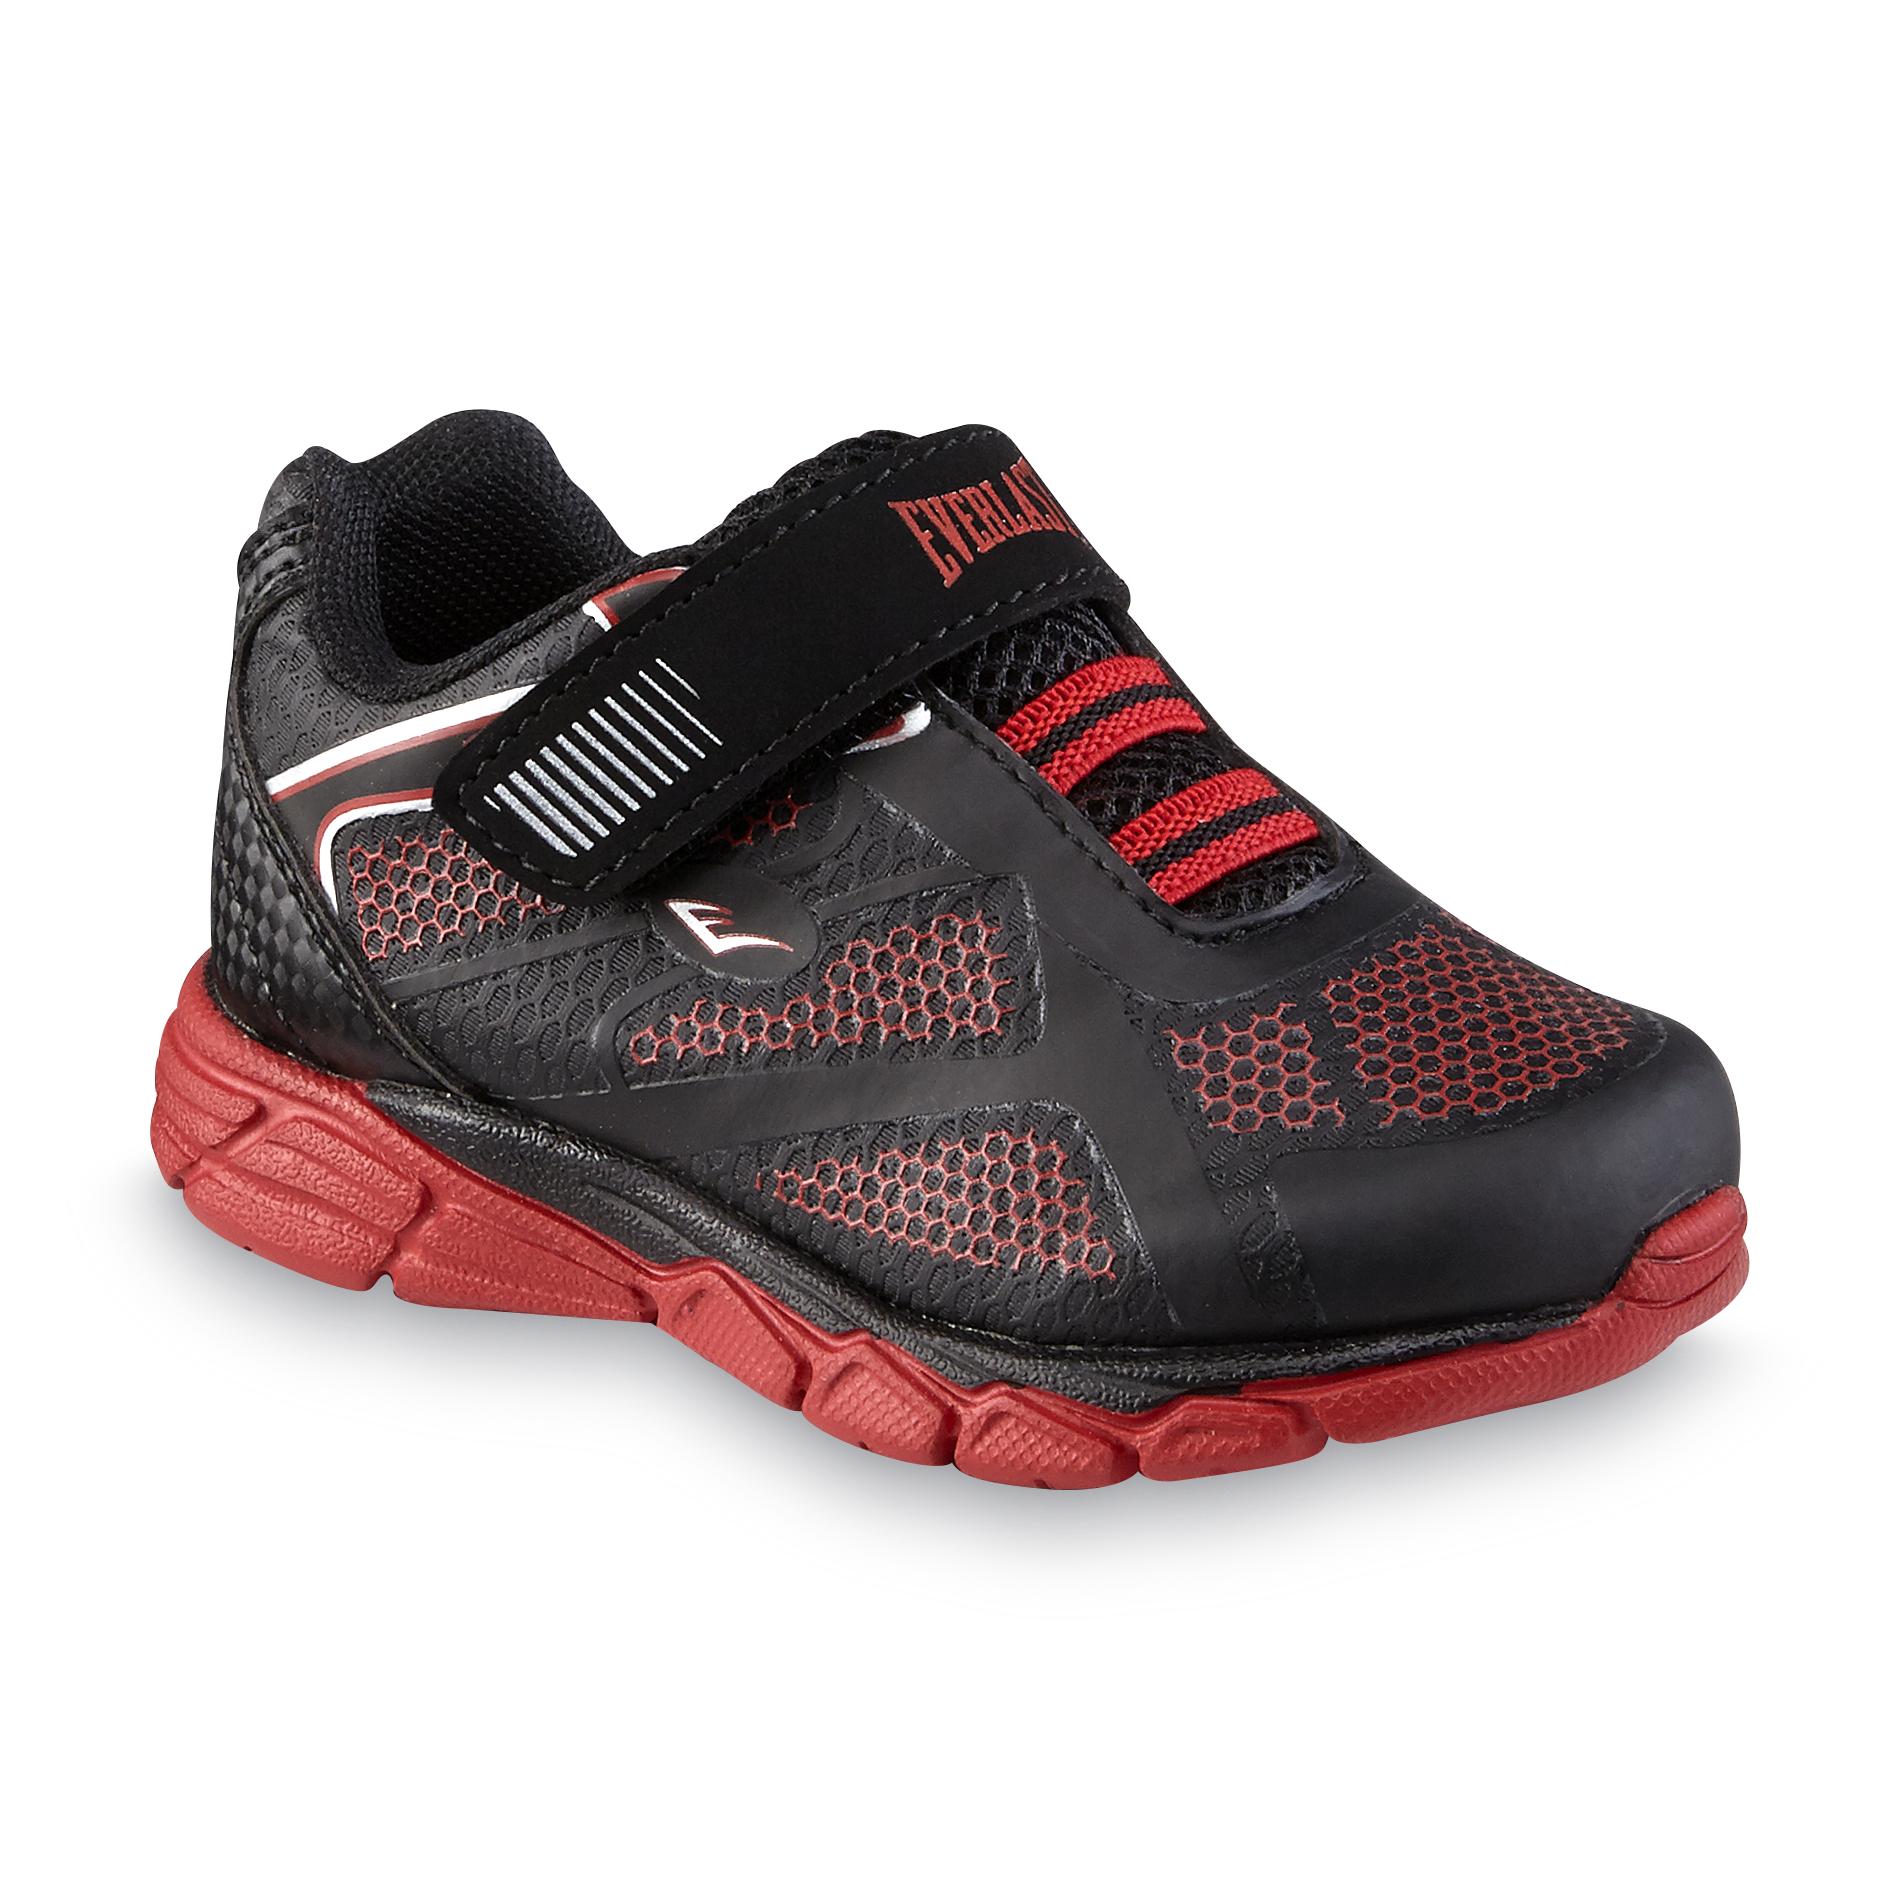 Everlast® Toddler Boy's Crestmont Black/Red Athletic Shoe ...